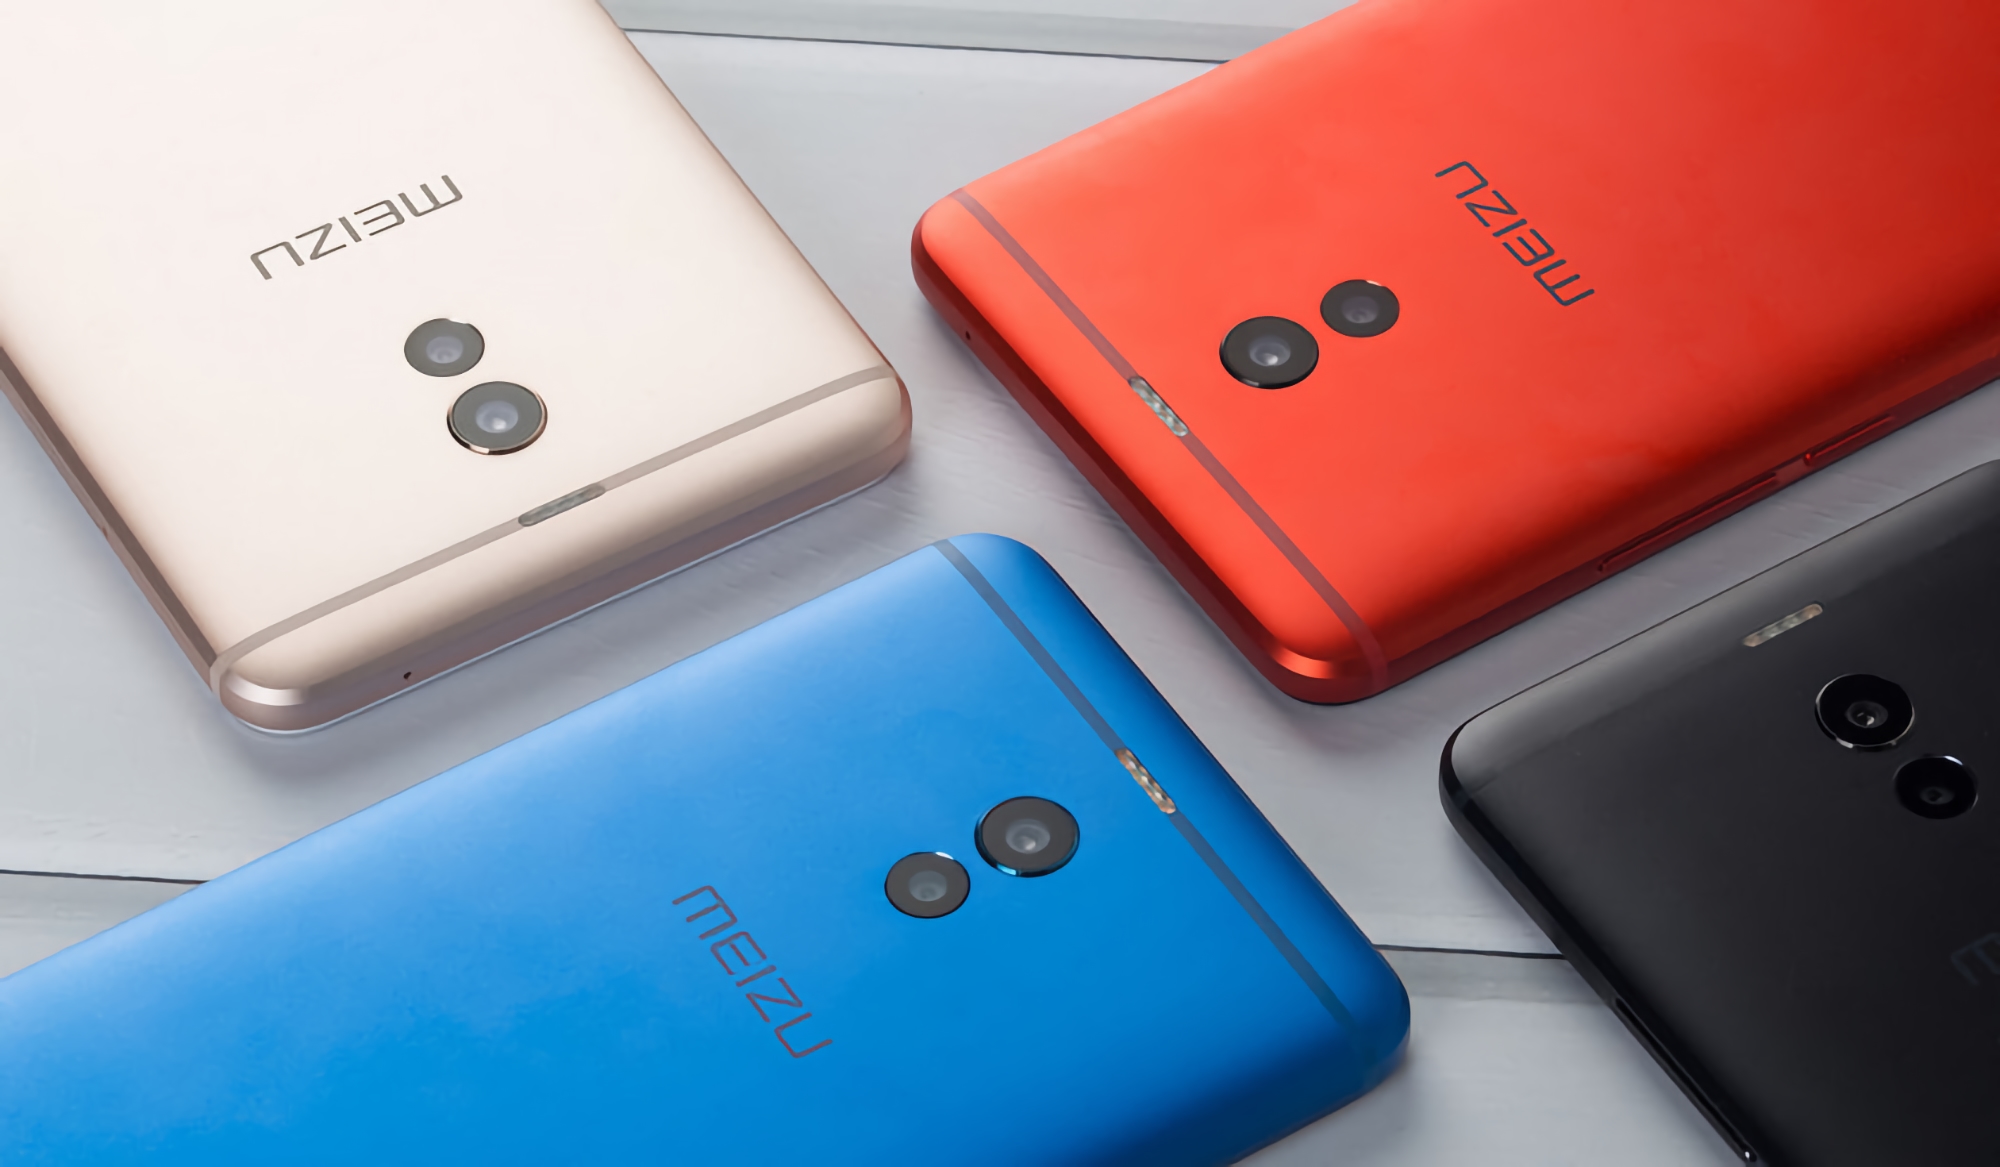 C'est officiel : Meizu va relancer des smartphones économiques sous la marque Blue Charm